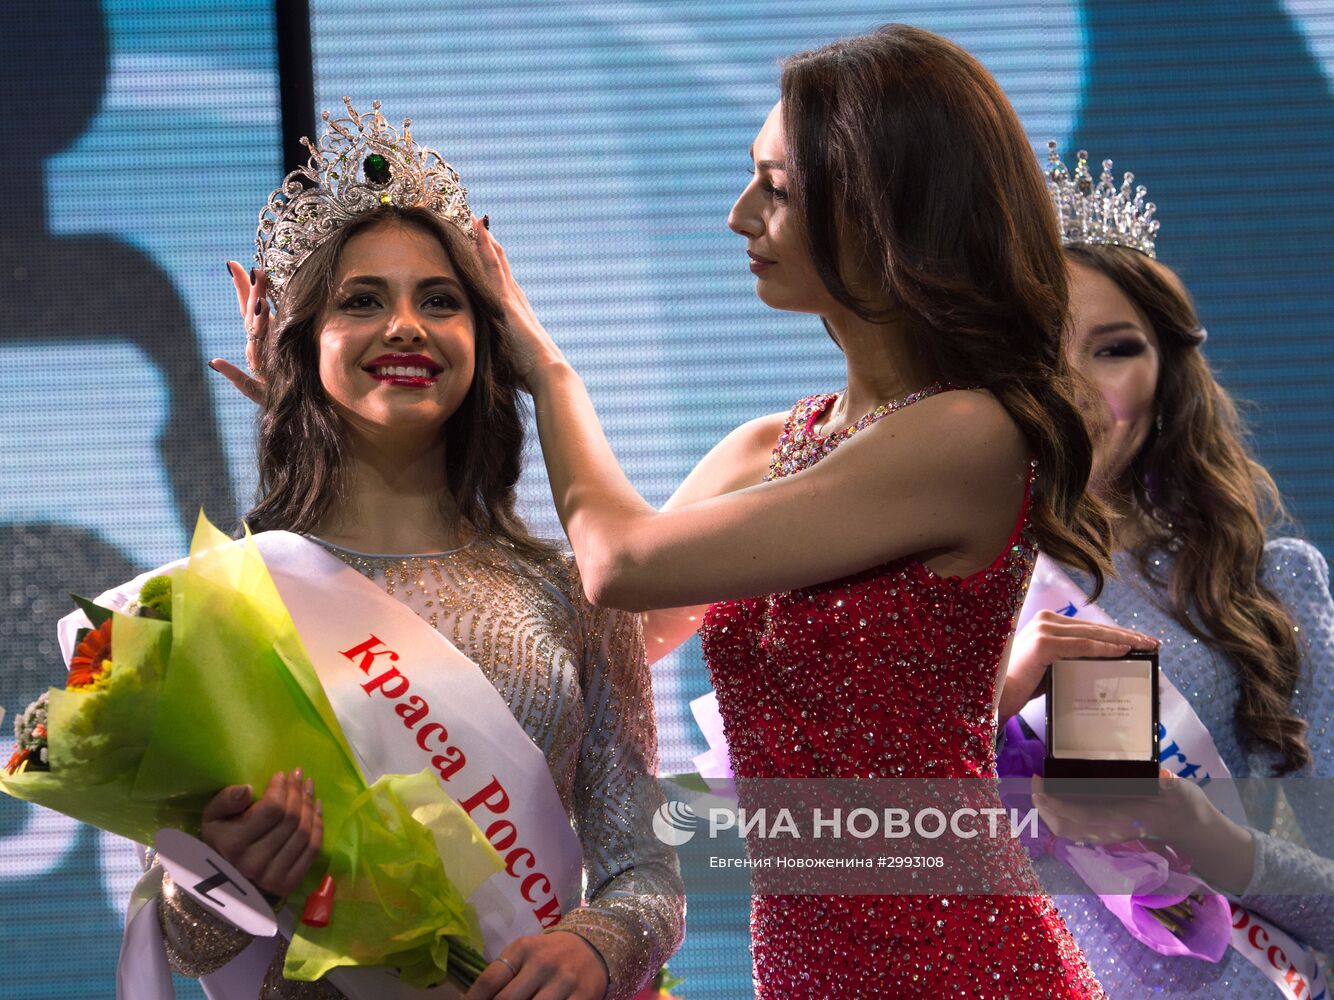 Финал конкурса "Краса России 2016"